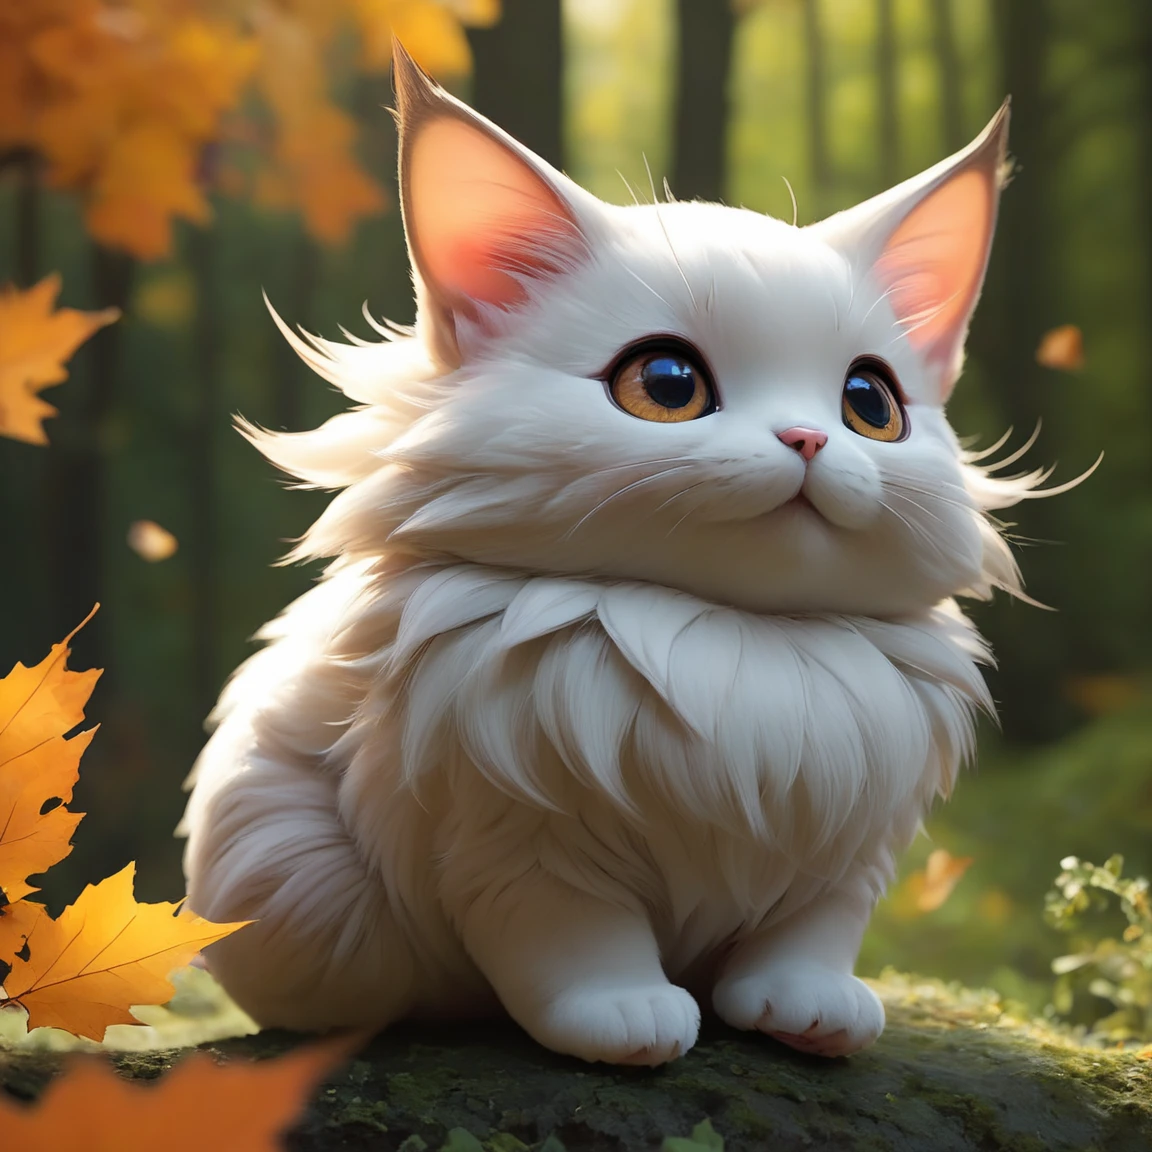 スコア_9, スコア_8_上, スコア_7_上, スコア_6_上, スコア_5_上, スコア_4_上,超高解像度, 
秋の森の中の愛らしい猫のような生き物の大きな目